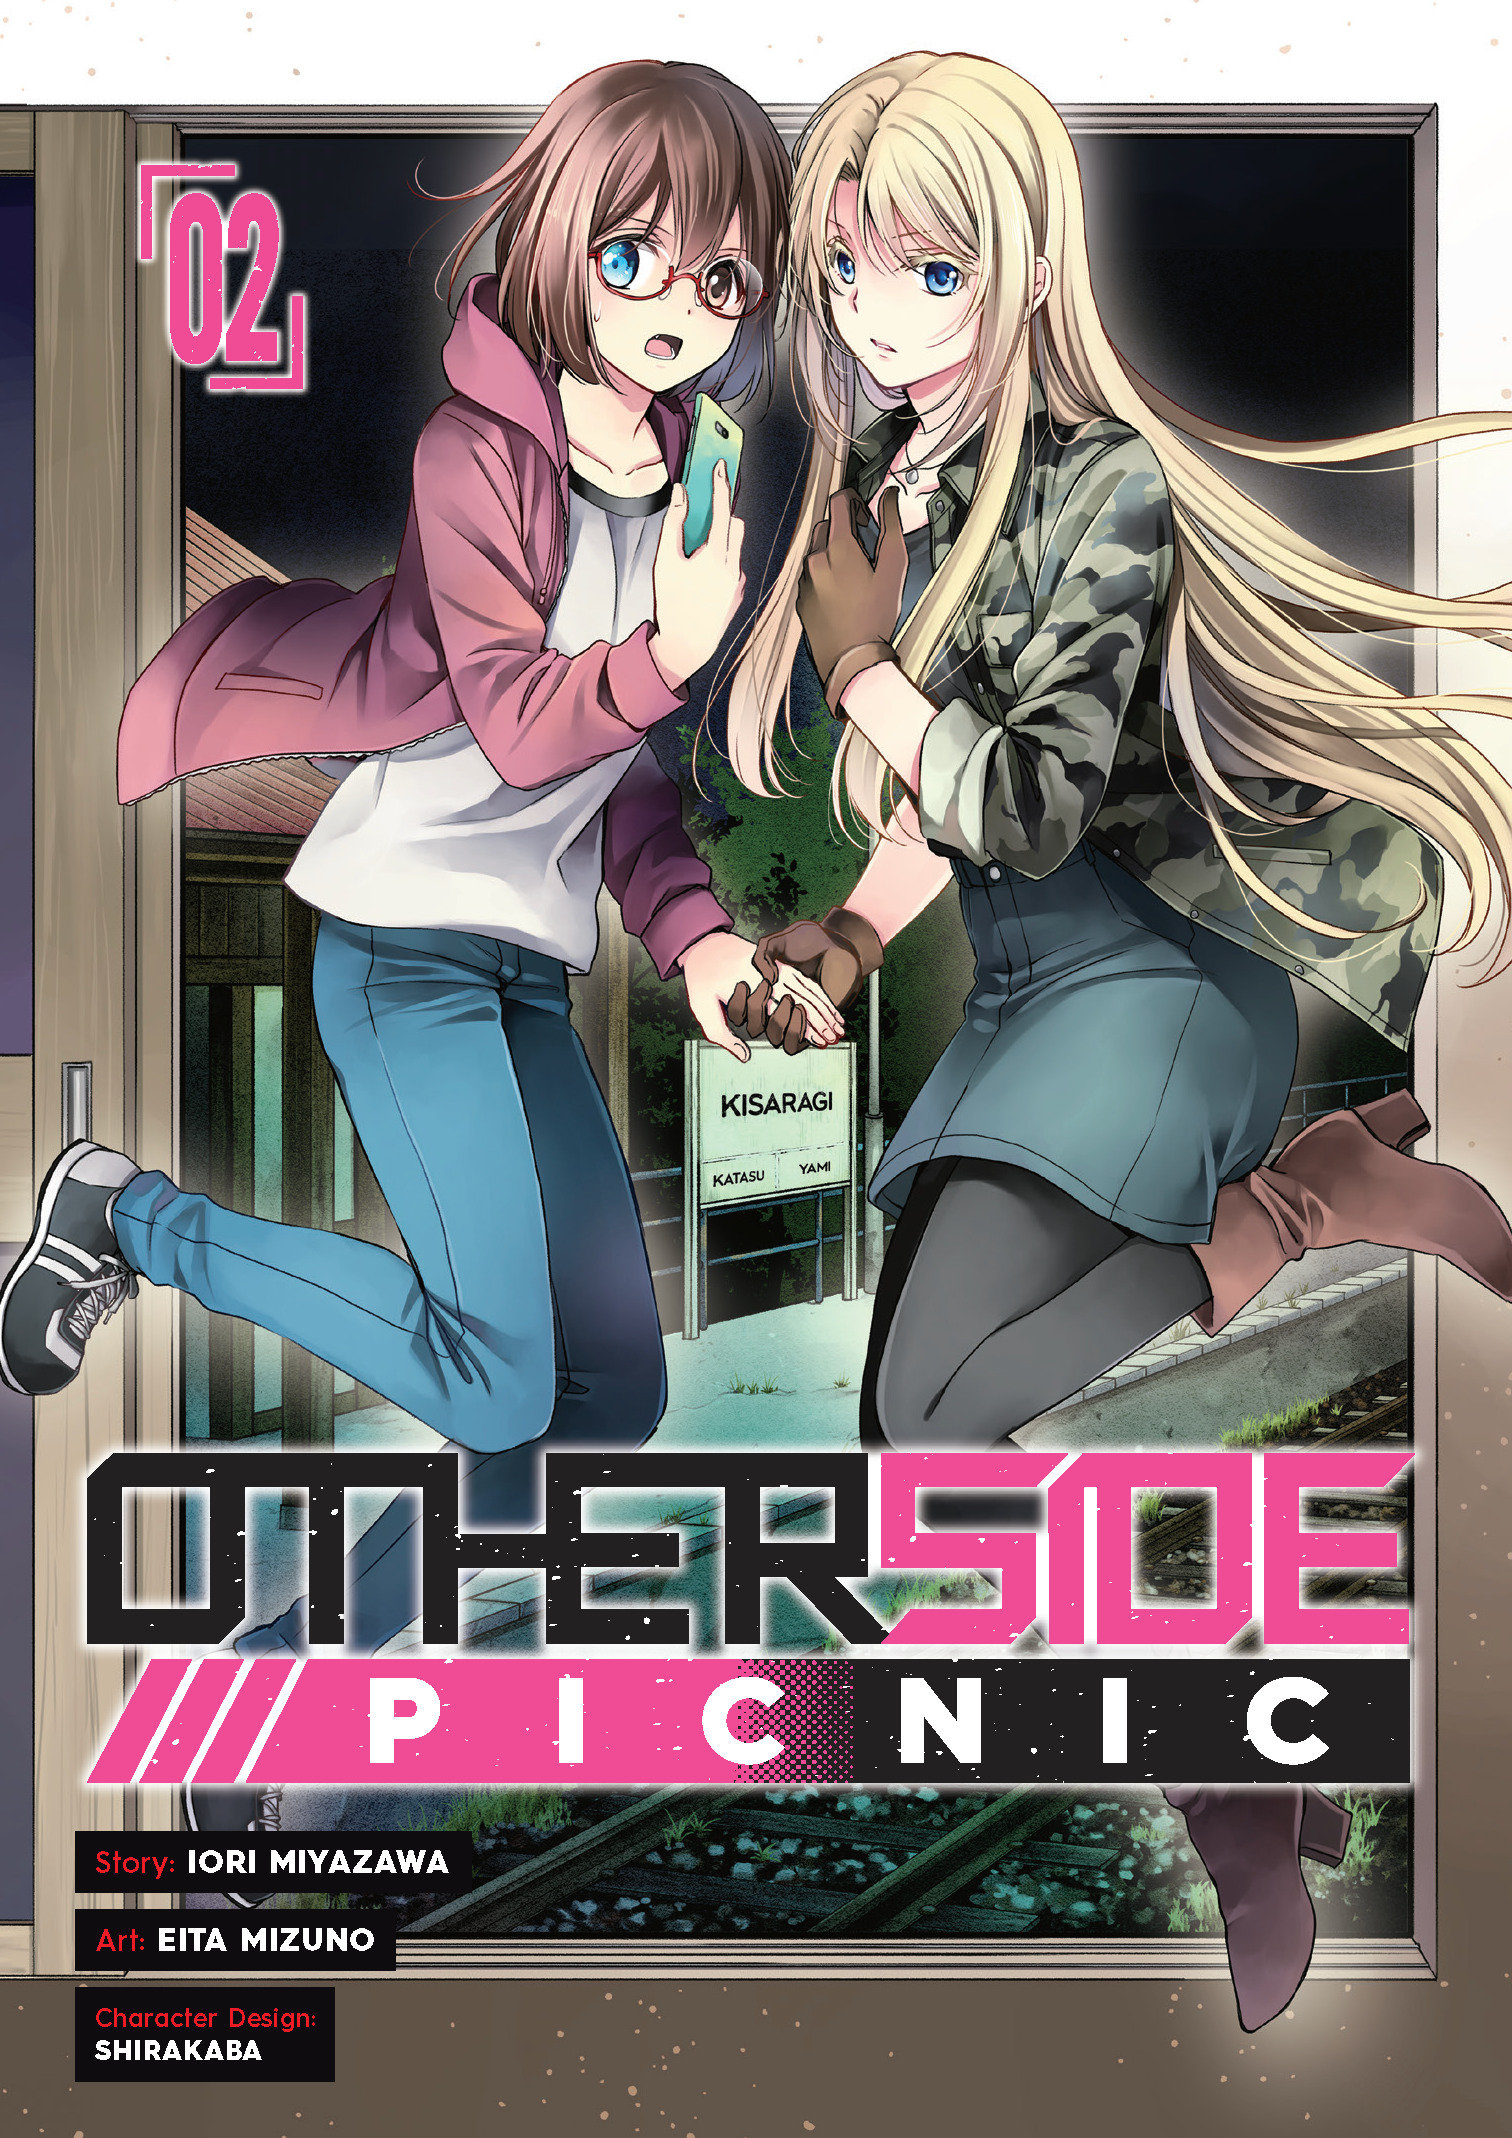 Otherside Picnic Manga Volume 2 (Mature)